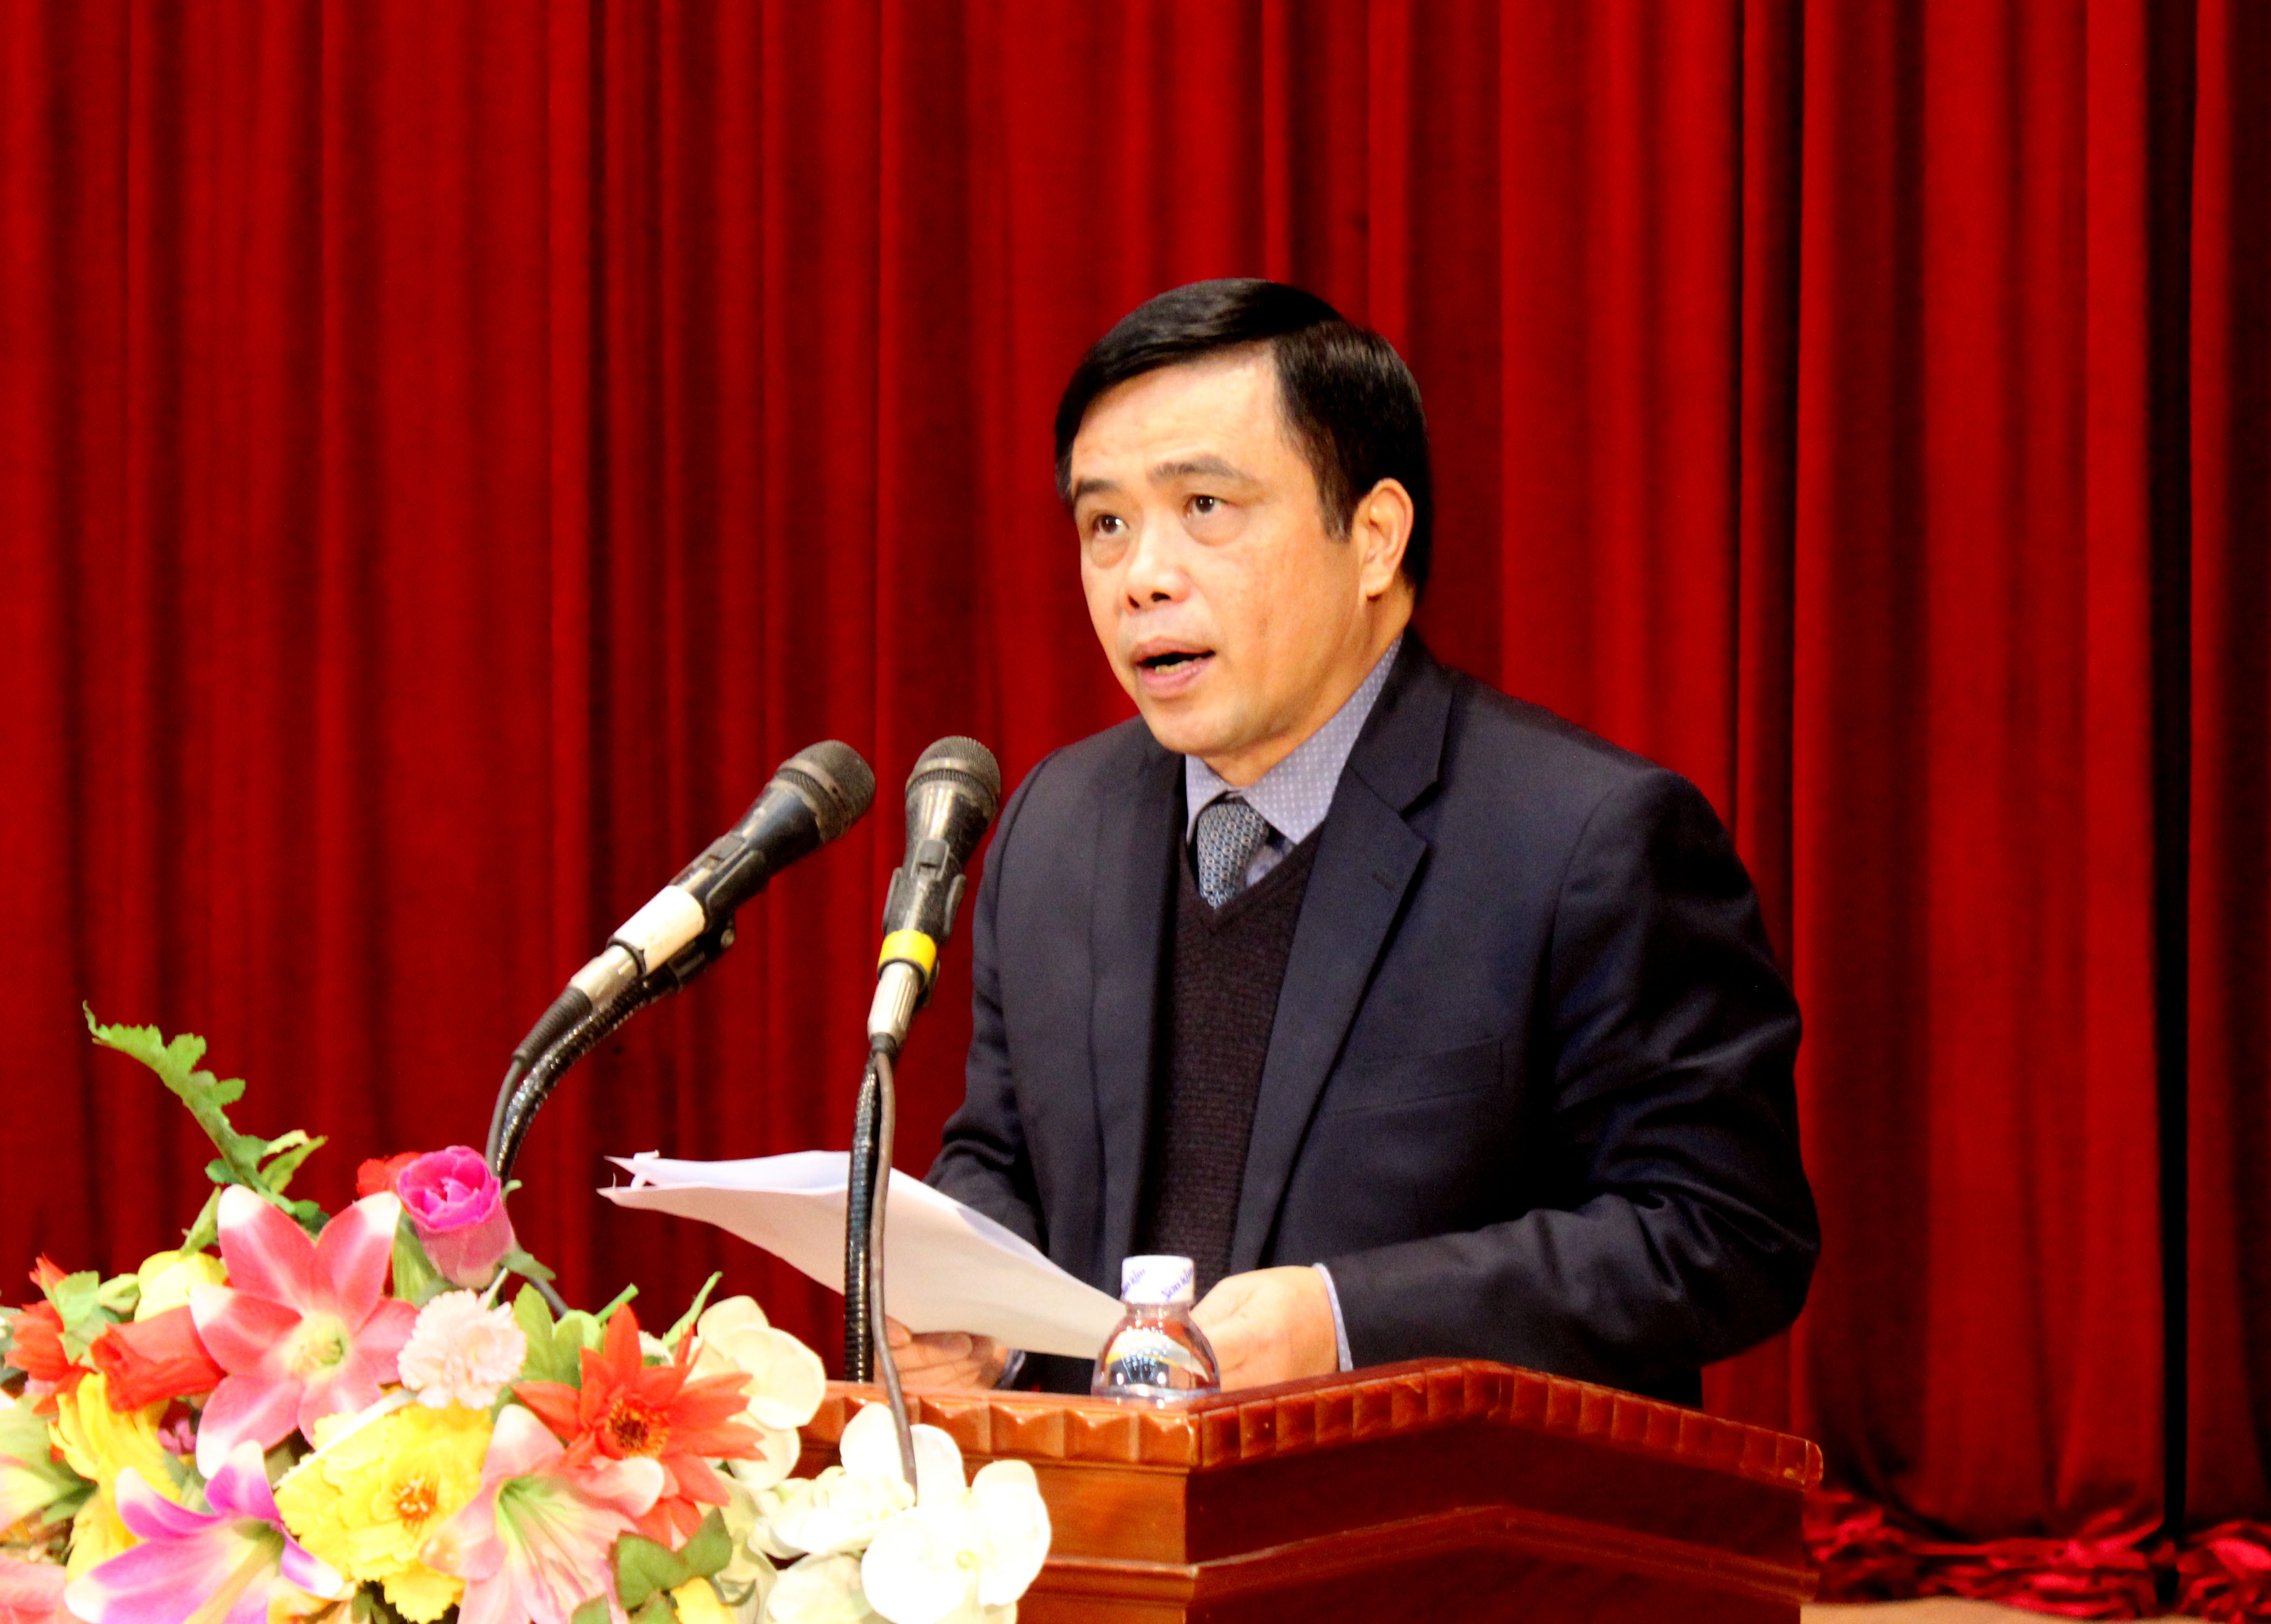 Đồng chí Huỳnh Thanh Điền - Phó Chủ tịch UBND Tỉnh chủ trì buổi lễ. Ảnh: Quang An